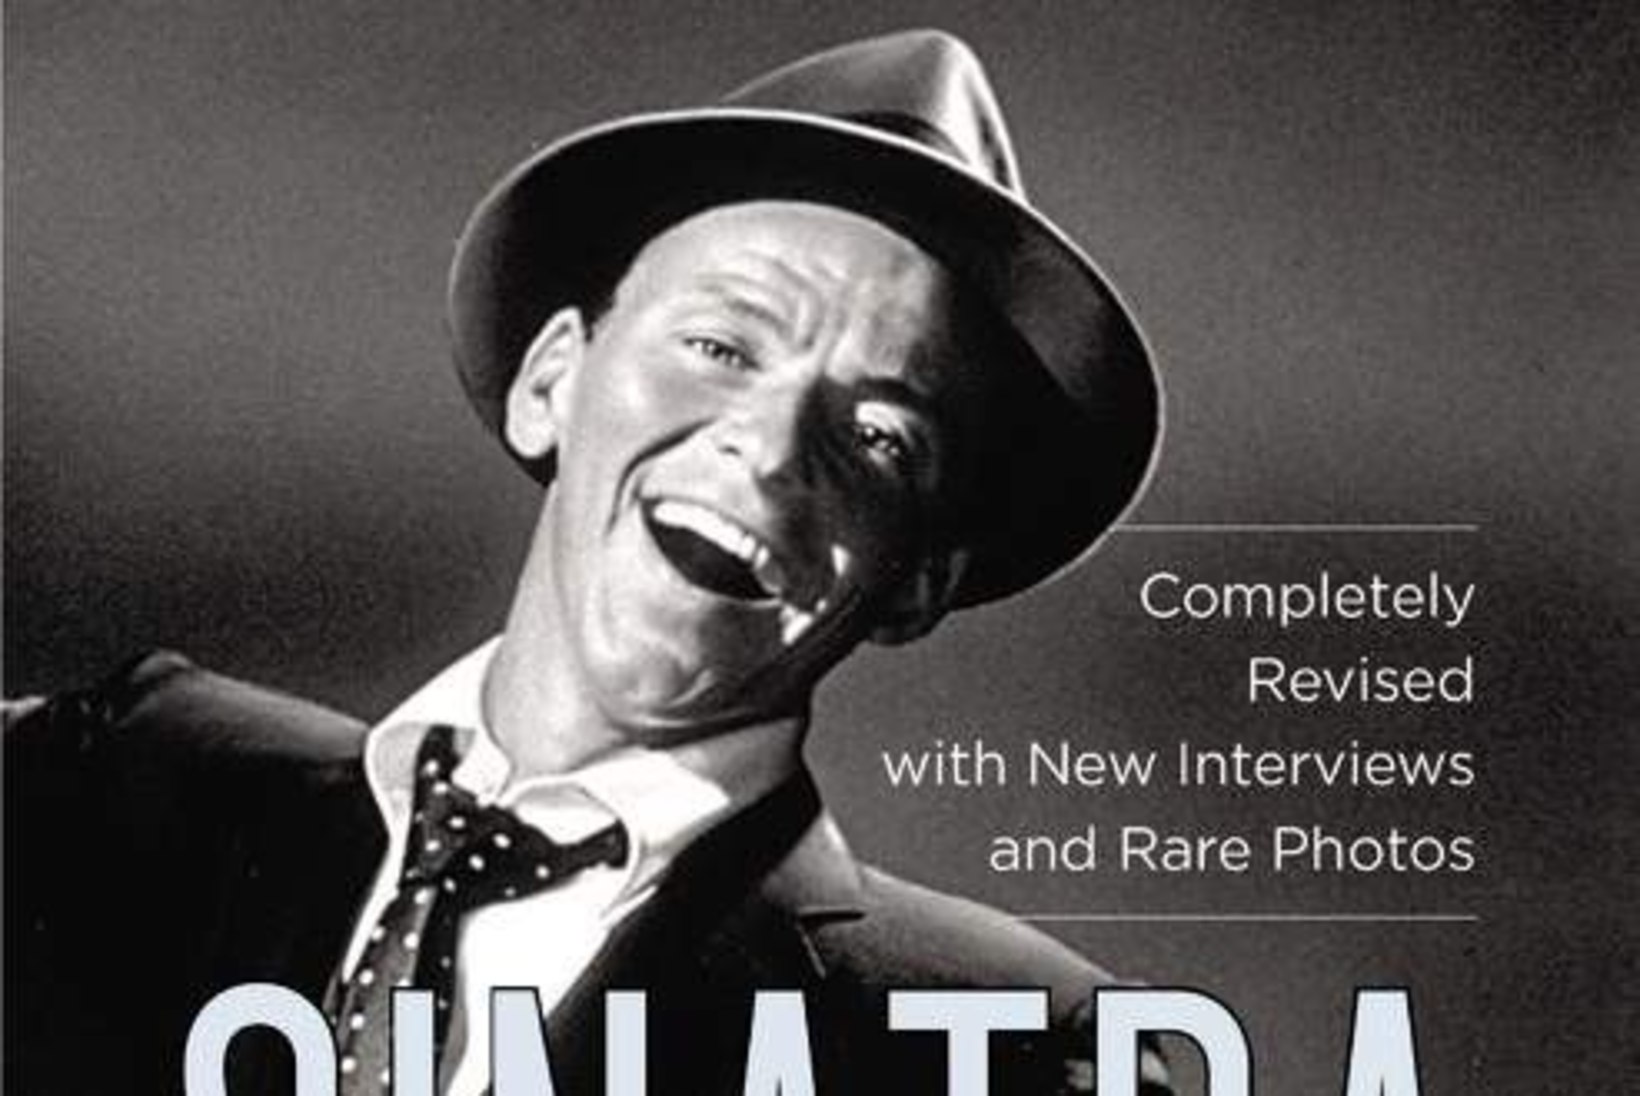 PIME KIRG: Ava Gardner ajas Frank Sinatra mitu korda enesetapu äärele